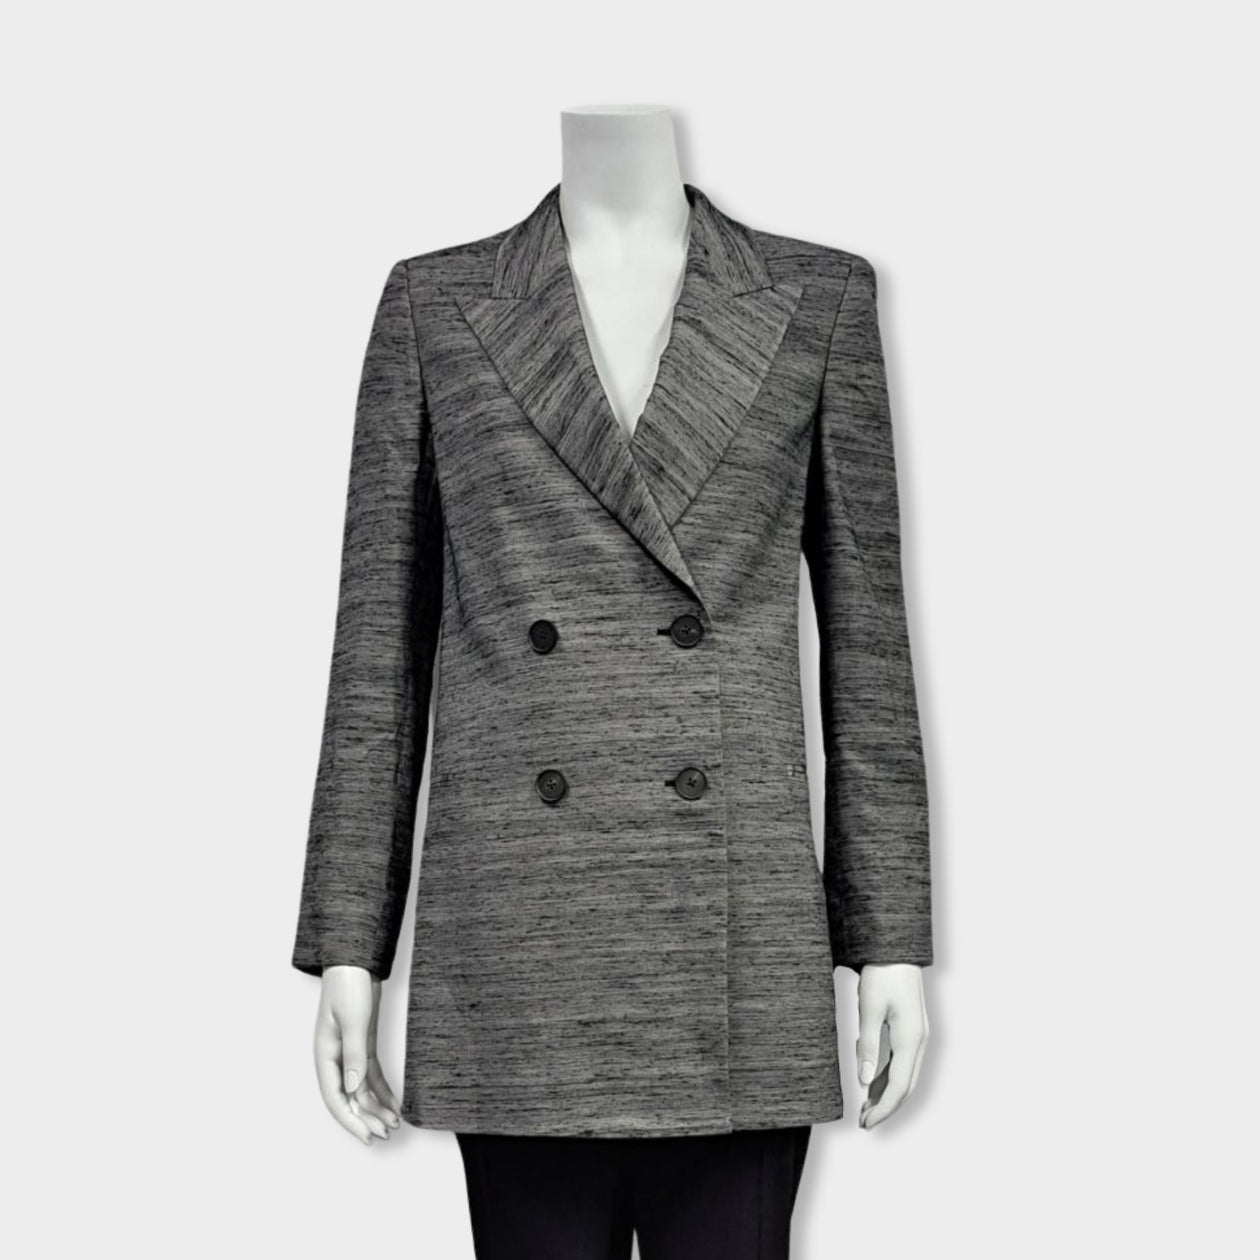 Armani Collezioni Grey pinstripe suit